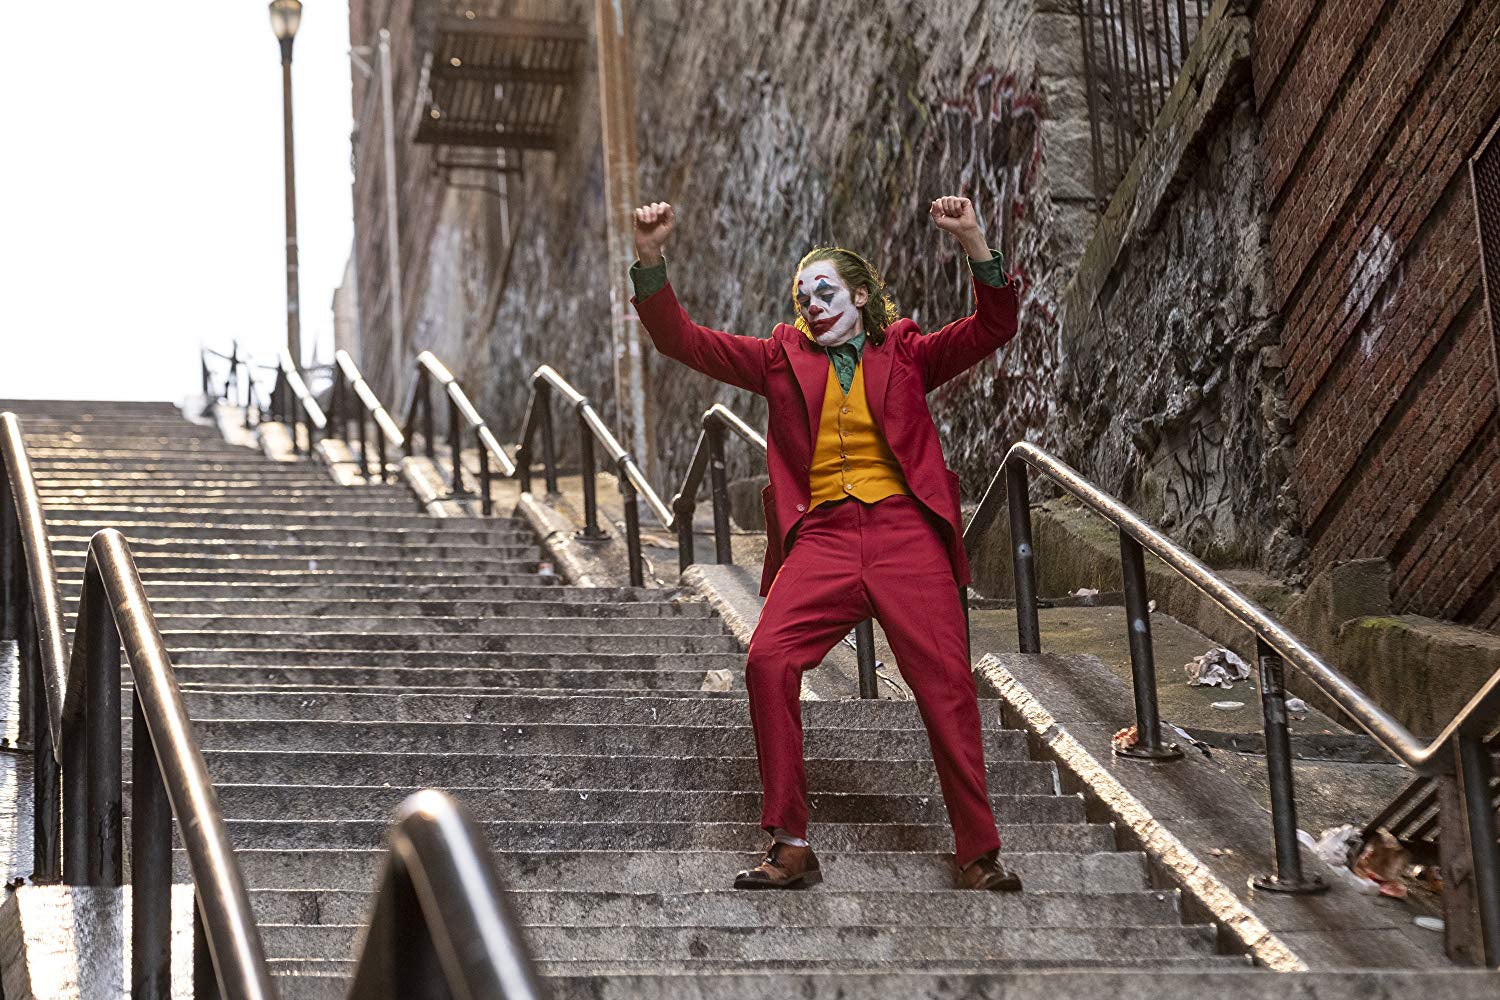 Joaquin Phoenix as the Joker, walking down a flight of stairs, in a still from Joker.